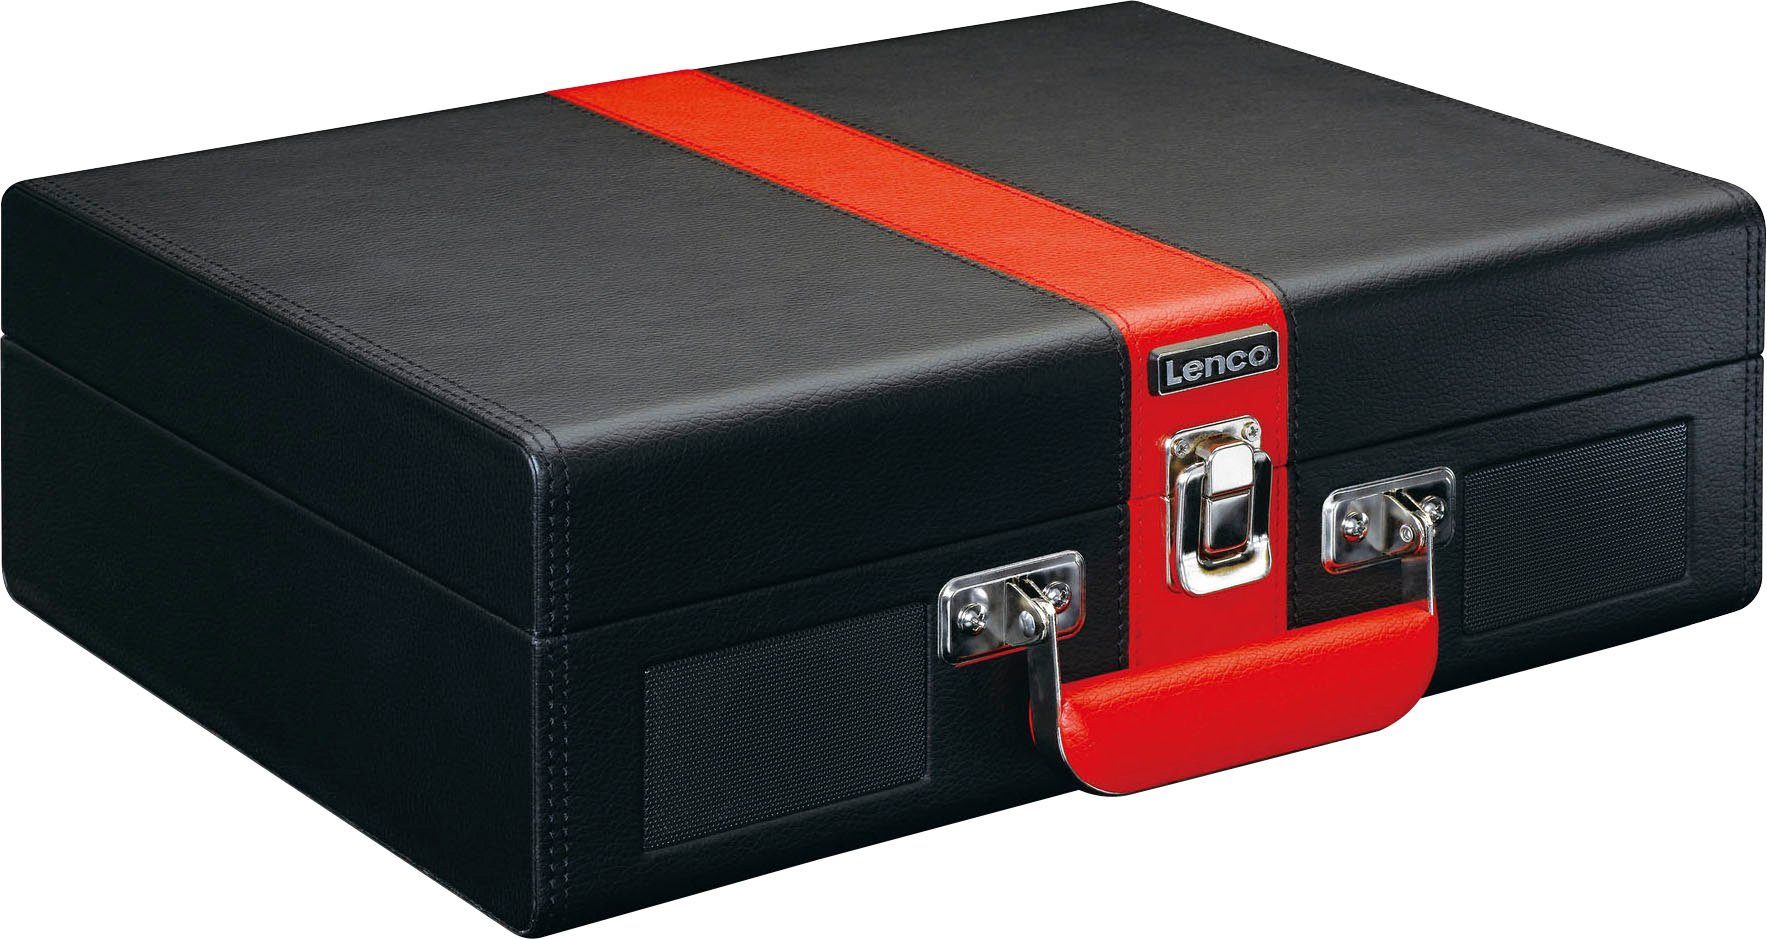 Lenco Koffer Plattenspieler mit BT und eingebauten Lsp. Plattenspieler (Riemenantrieb) Rot-Schwarz | Plattenspieler